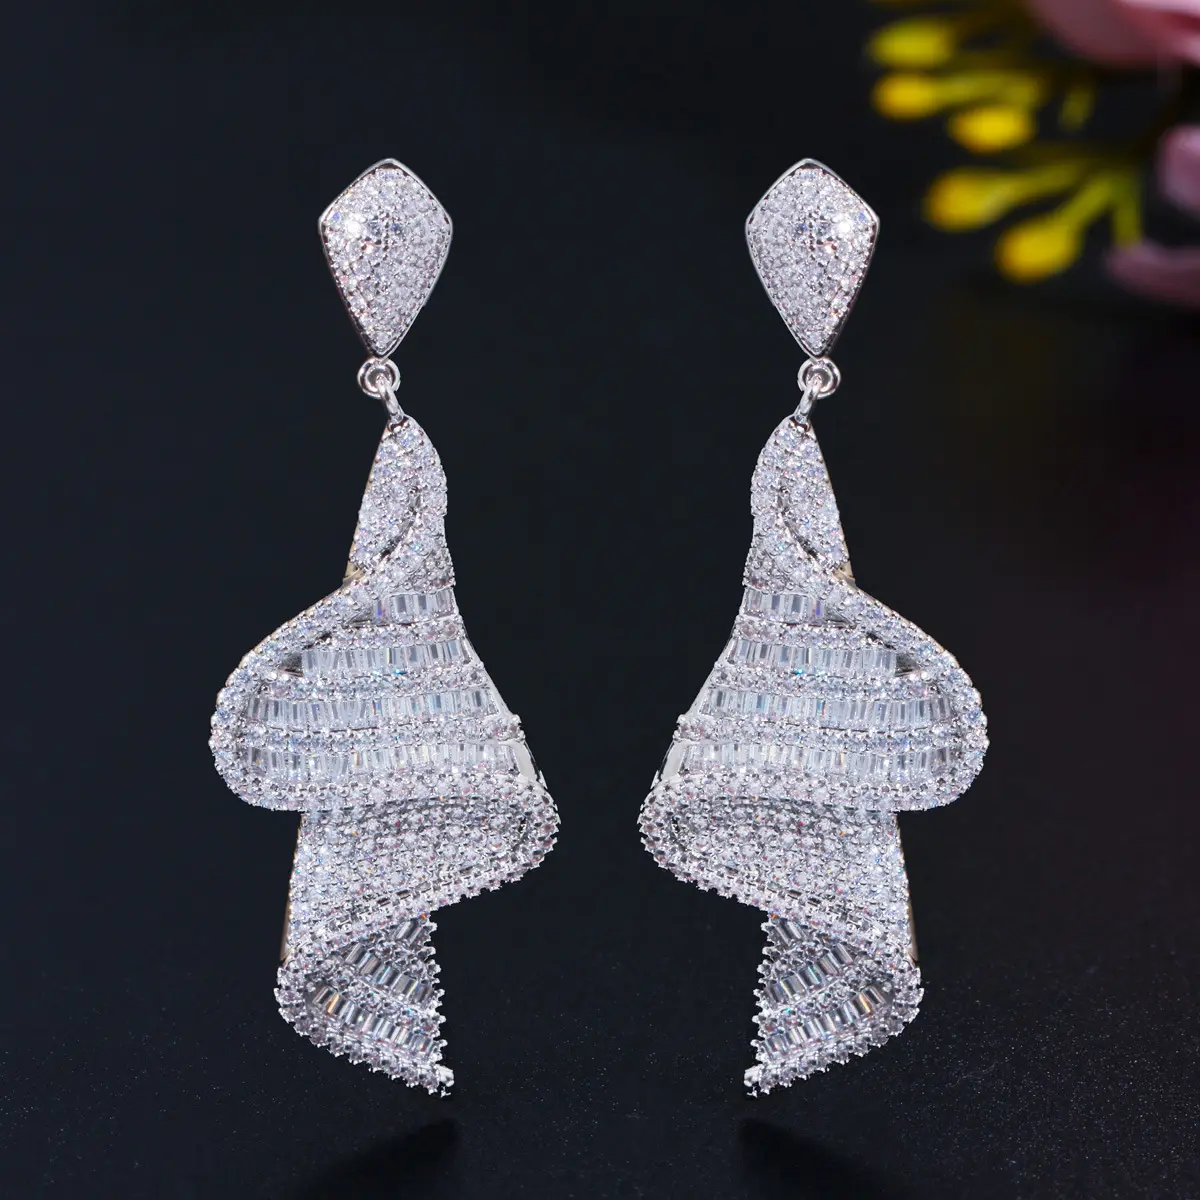 Giá Bán Buôn Chất Lượng Cao Hàn Quốc Stud Earrings Trang Sức Cz Zirconia Mạ Vàng Woman Earrings Đối Với Phụ Nữ 2020